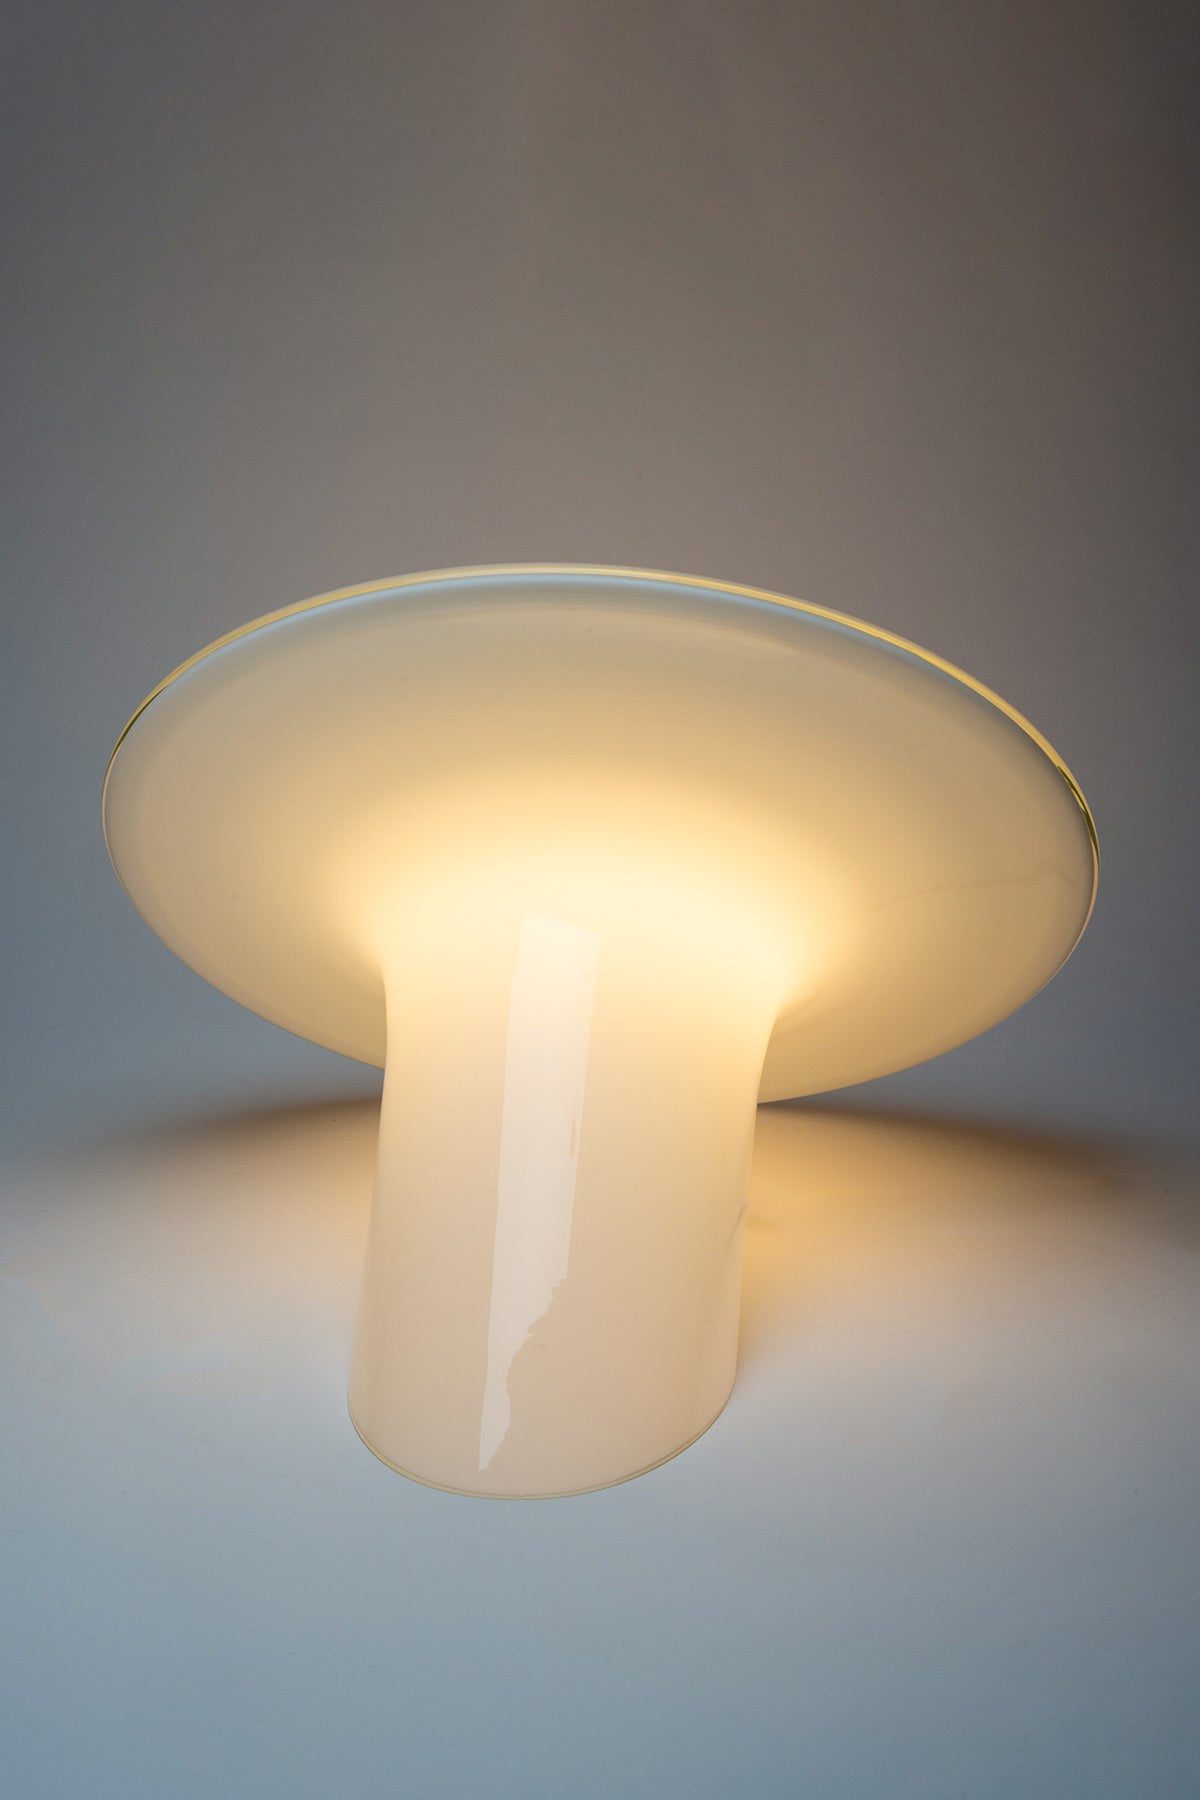 MAXFIELD PRIVATE COLLECTION | MURANO GLASS TABLE LAMP